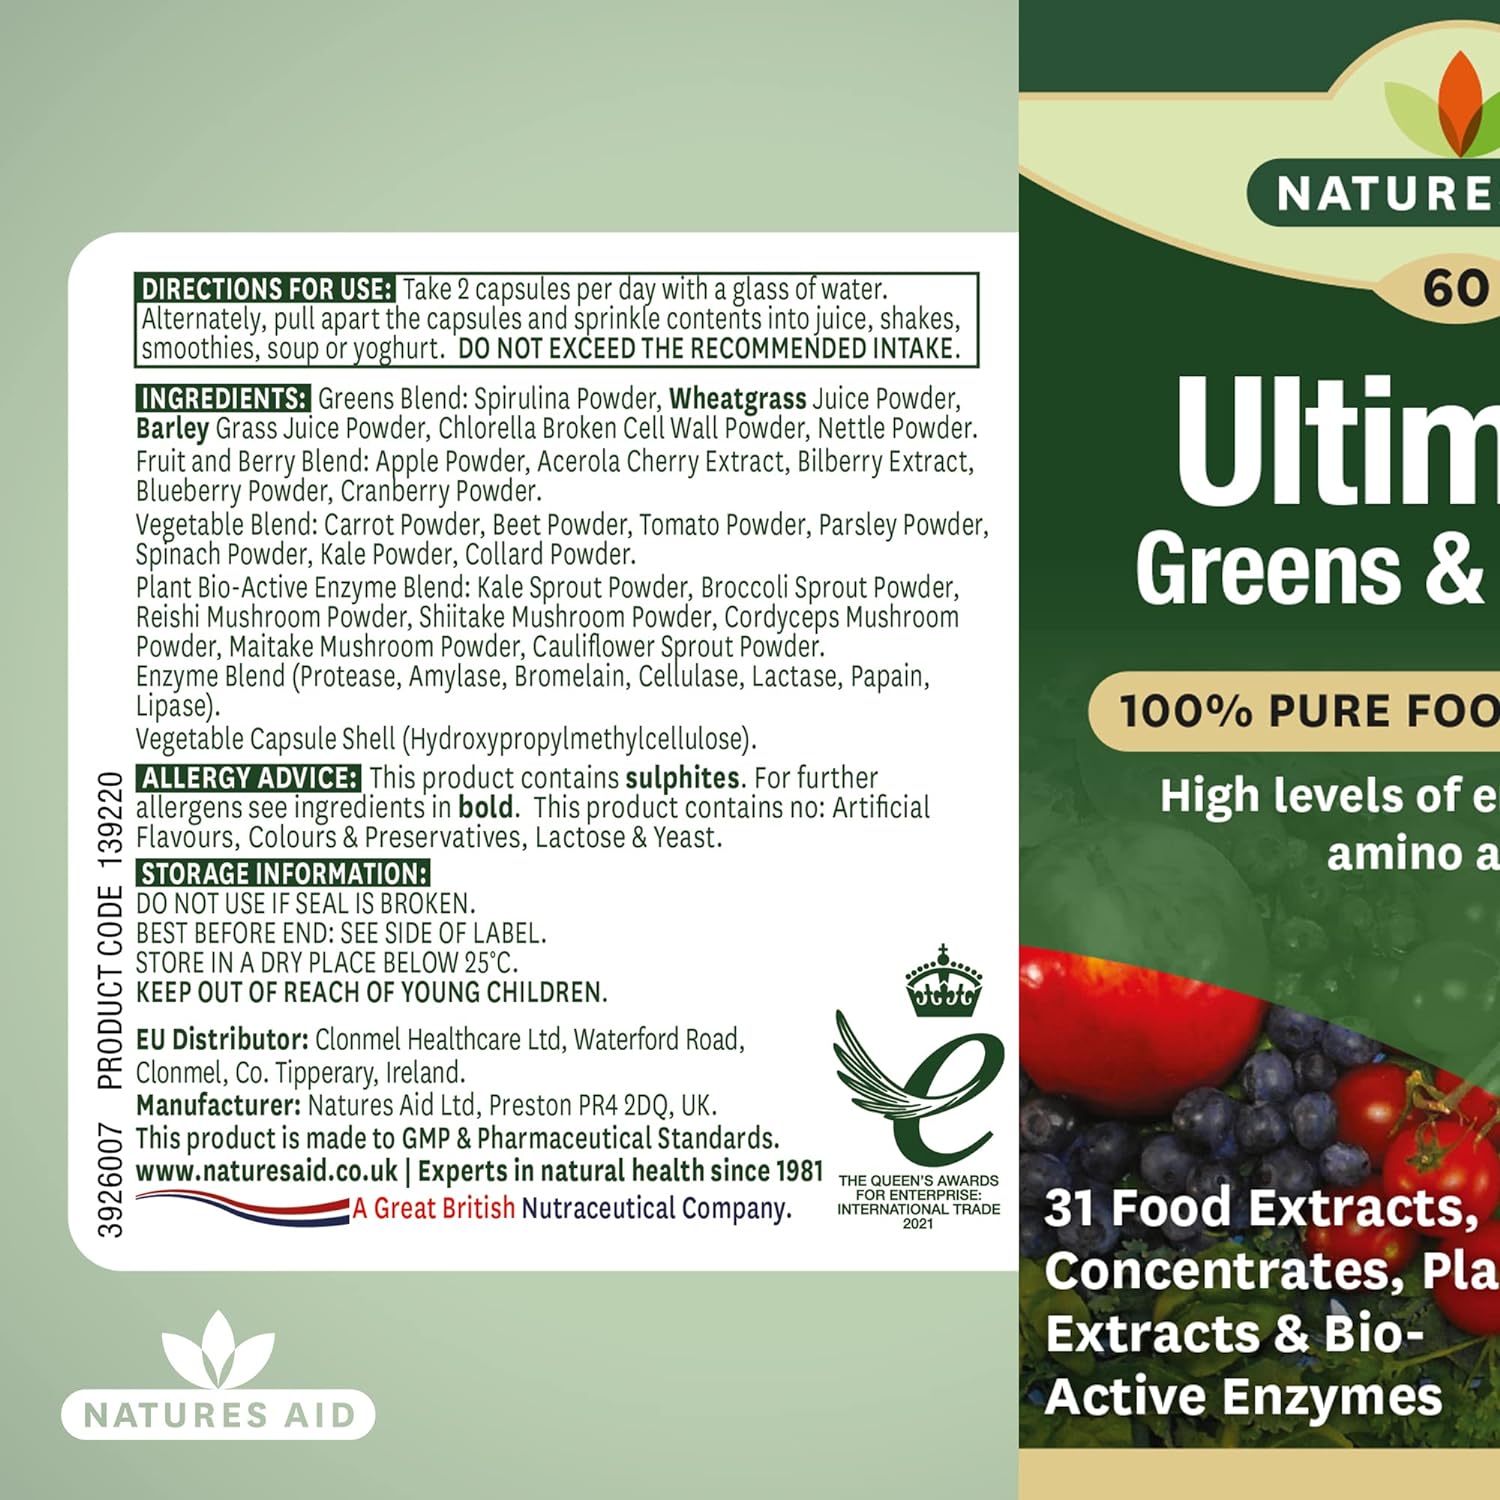 Ultimate Greens & Berries 60 Capsules